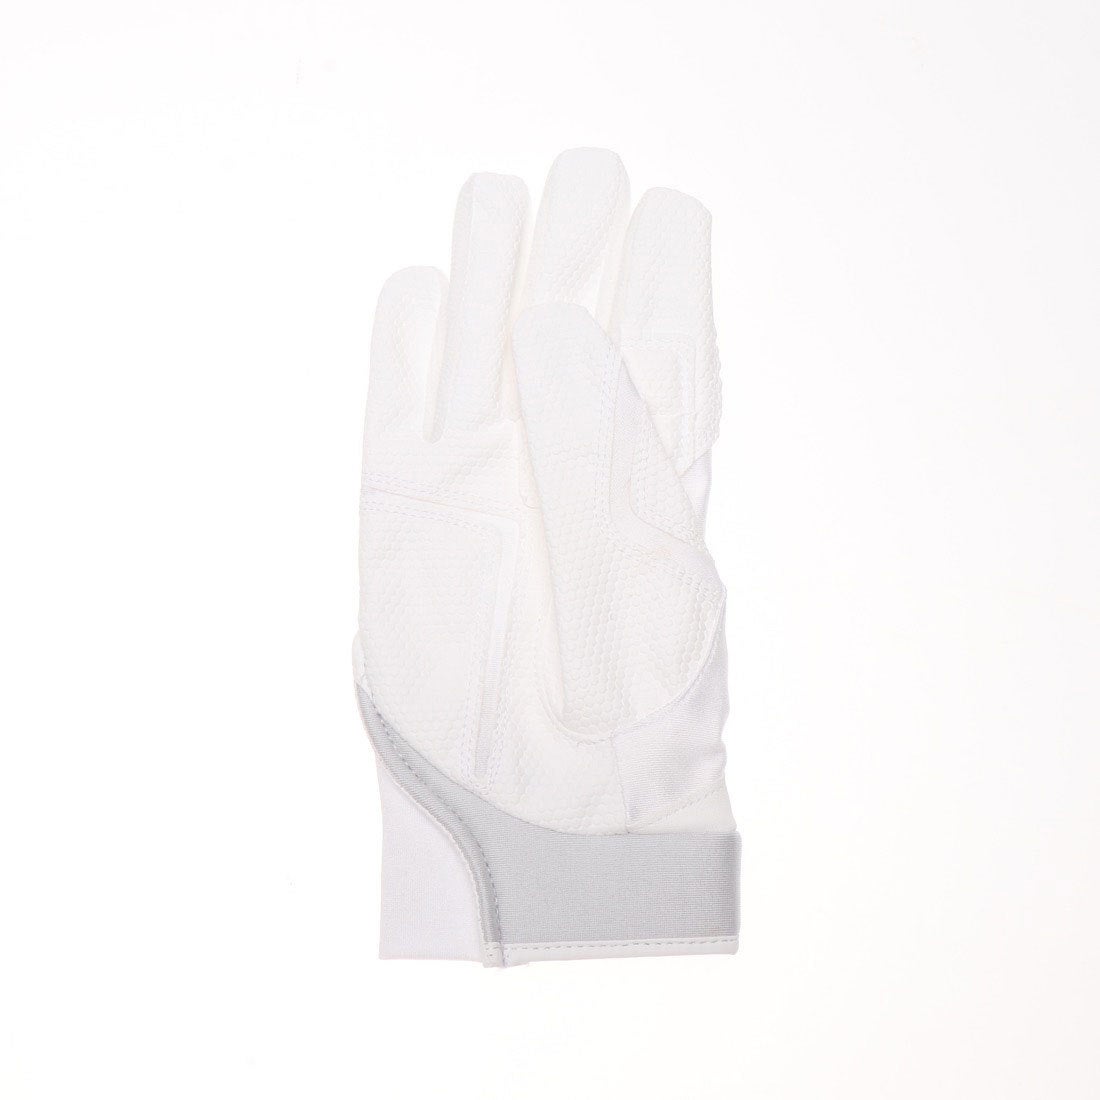 495円 【GINGER掲載商品】 ミズノ公式 守備手袋 ジュニア ネイビー×ホワイト